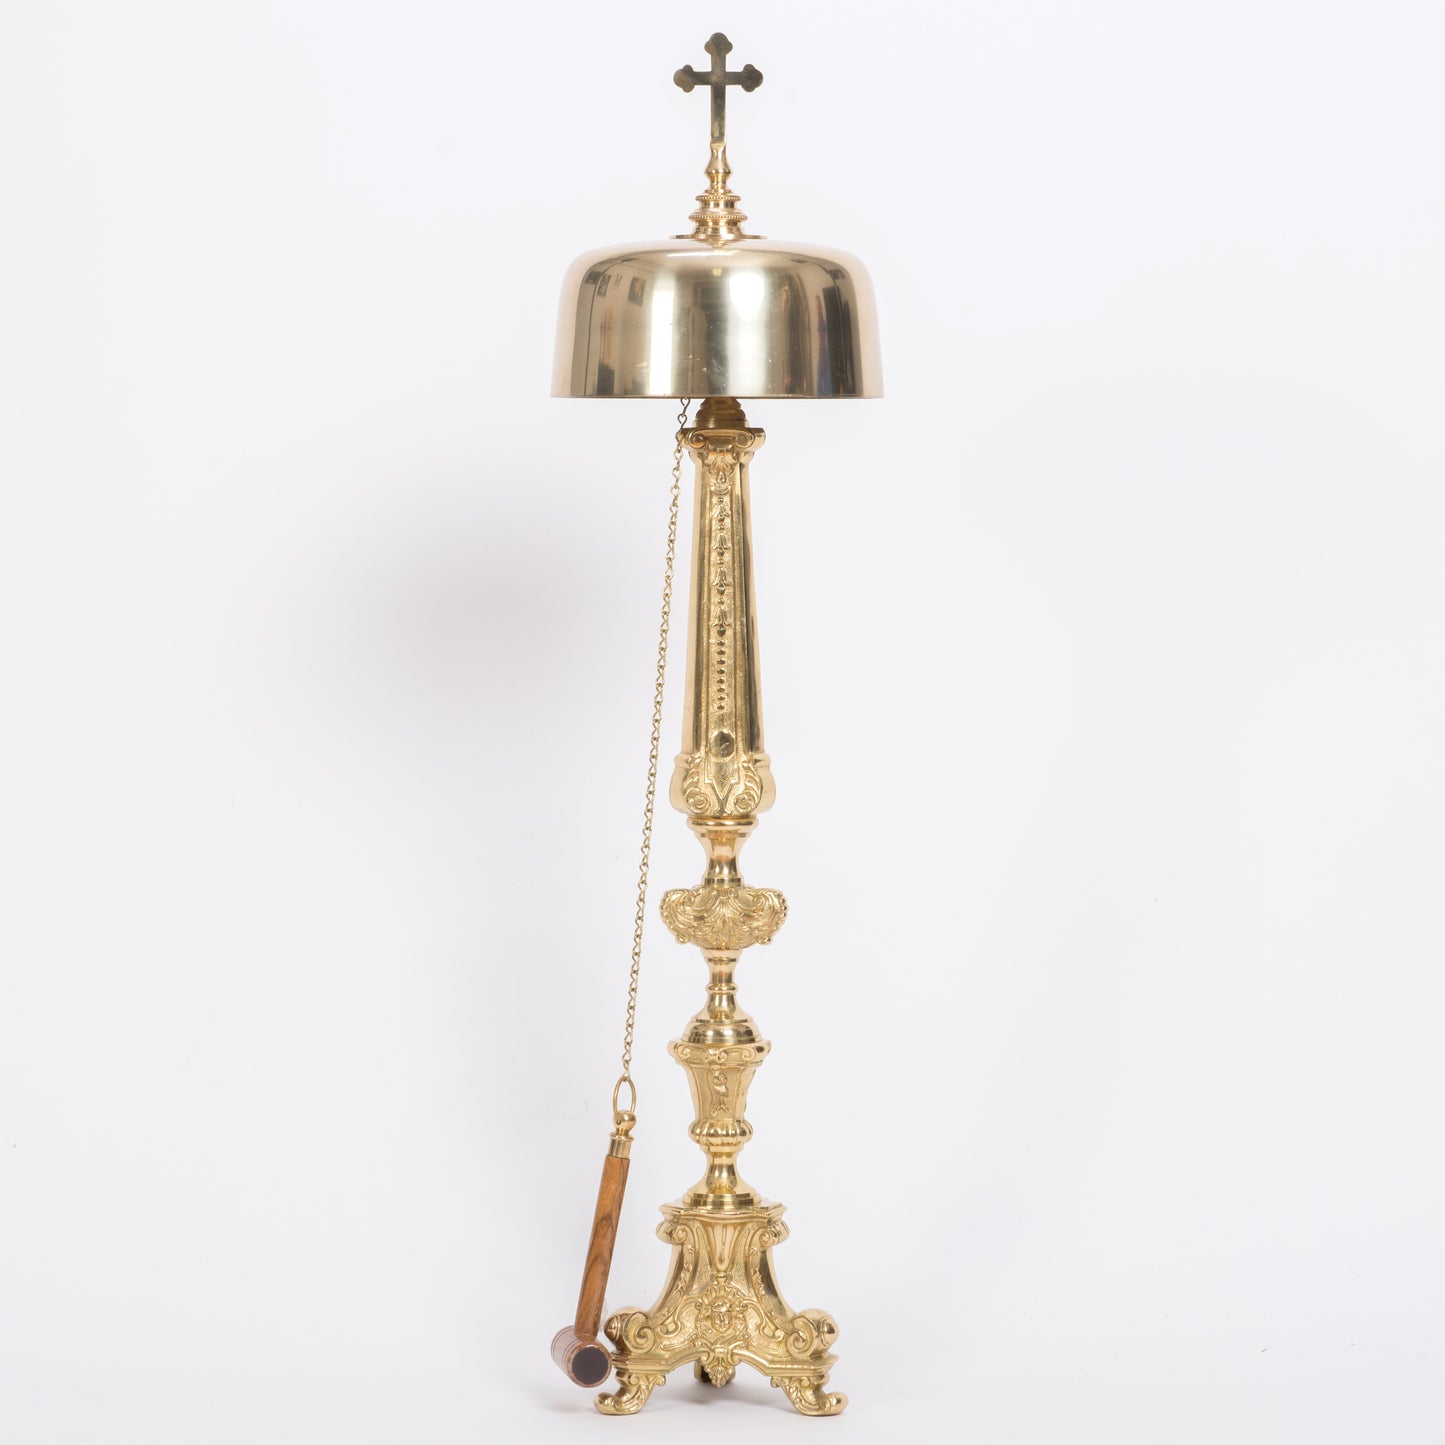 H-200-167 Church Gong, Standing Bell